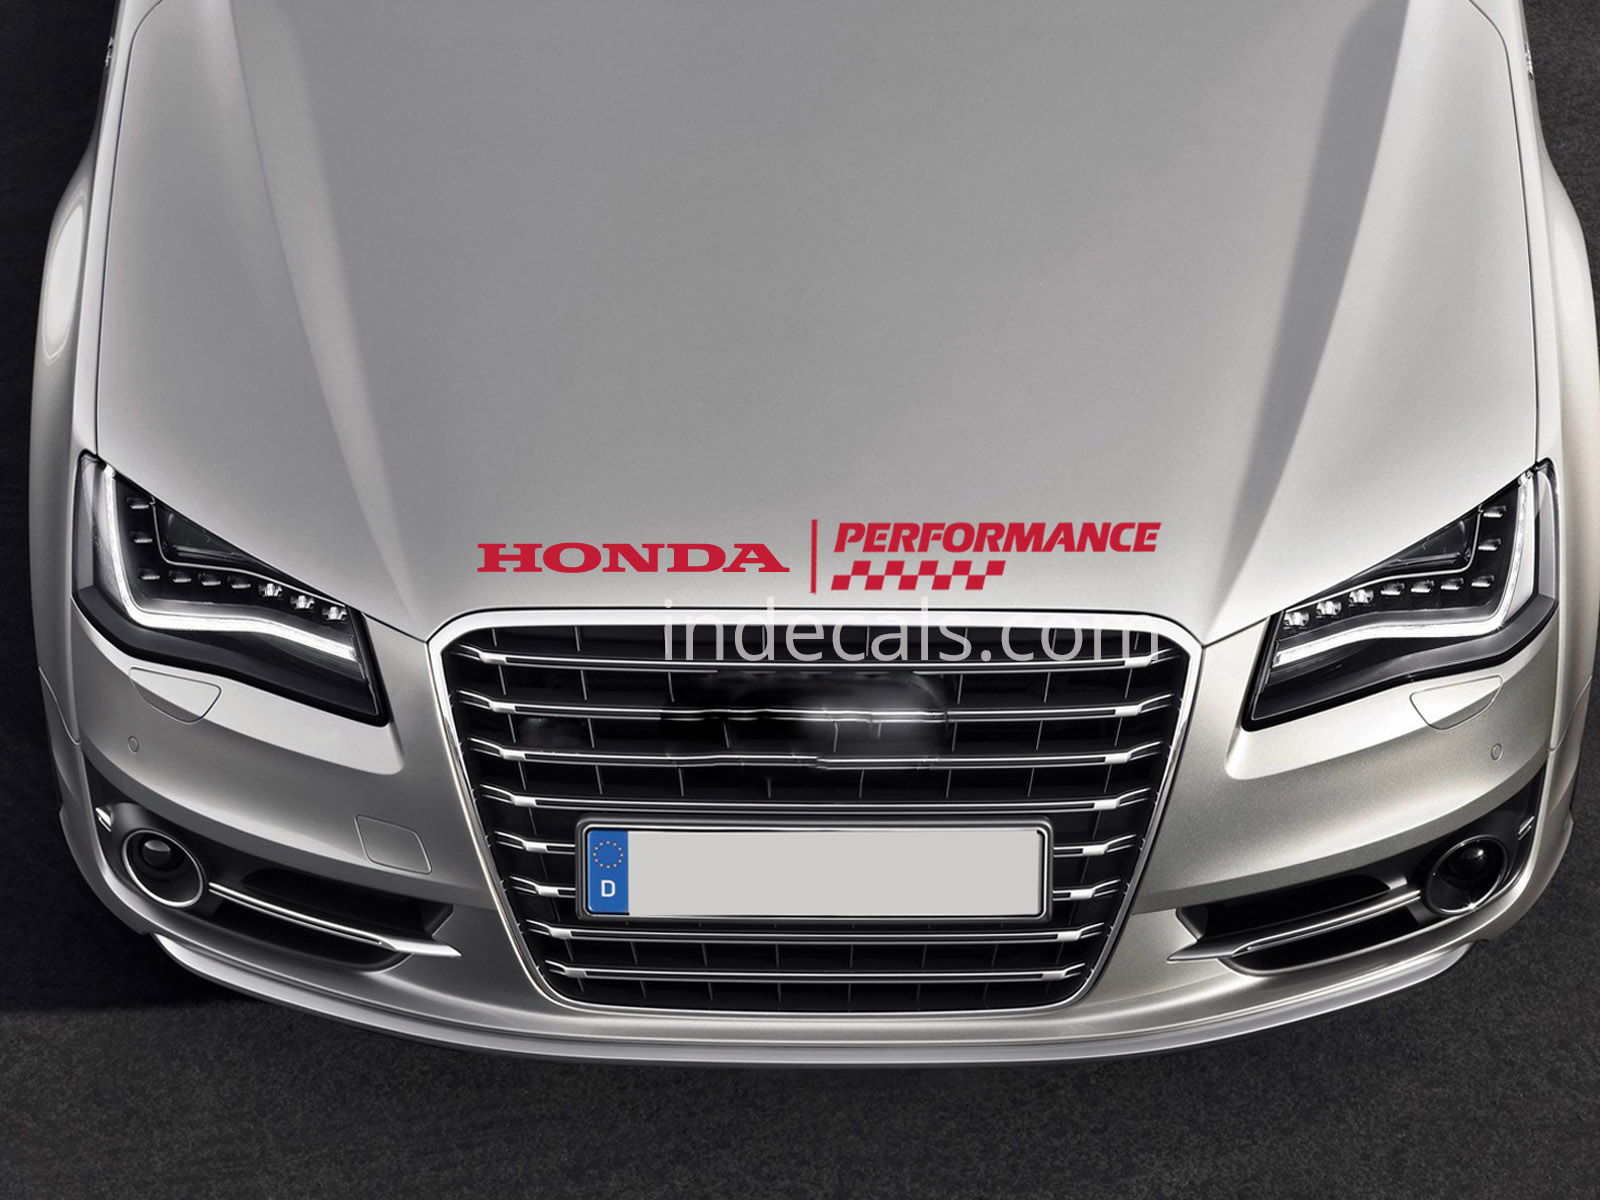 1 x Honda Performance Sticker for Bonnet - Red